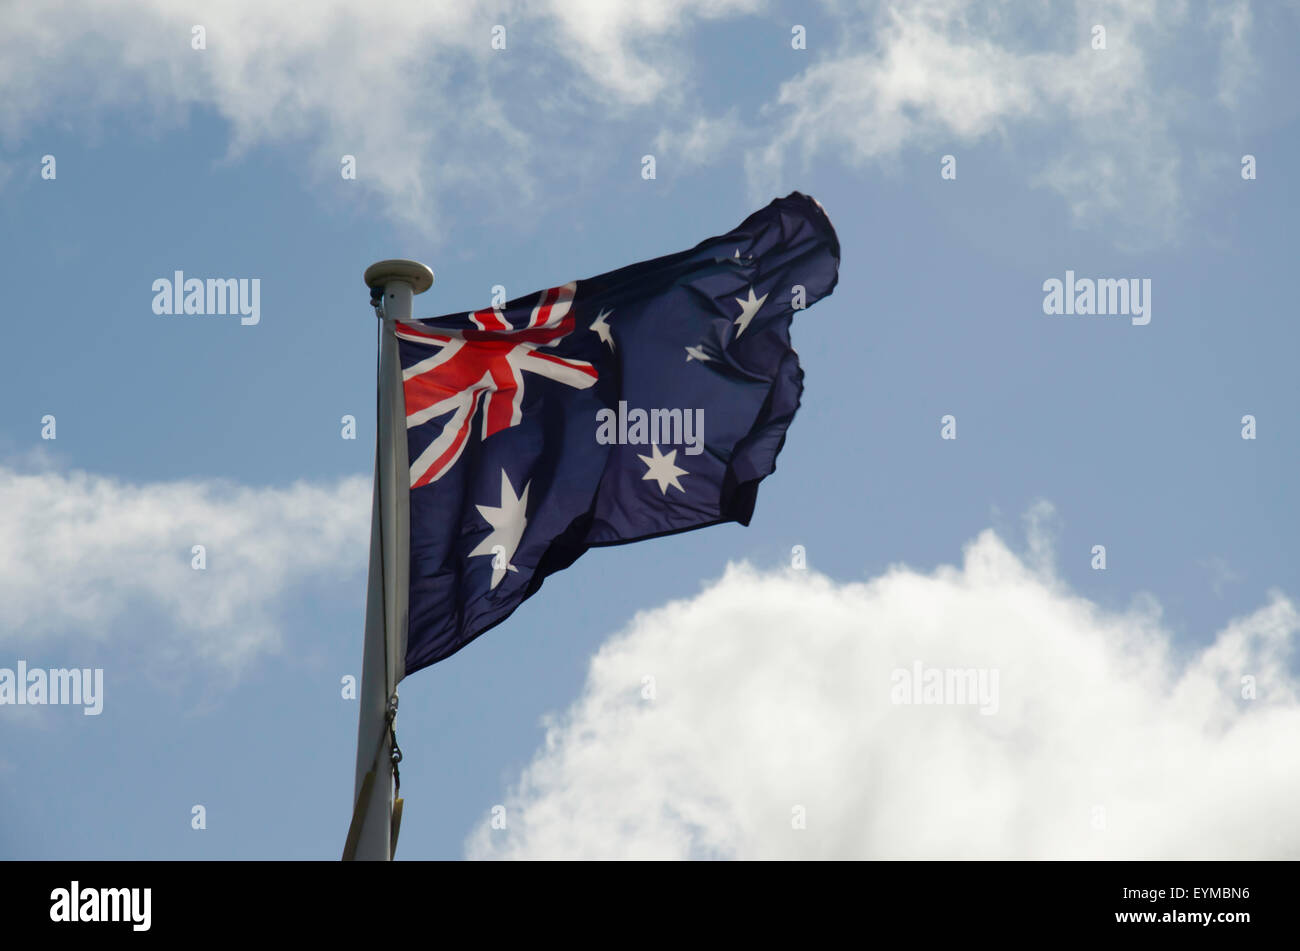 Die australische Nationalflagge (blauer Fähnrich) fliegt stolz unter einem wunderschönen blauen Himmel Stockfoto